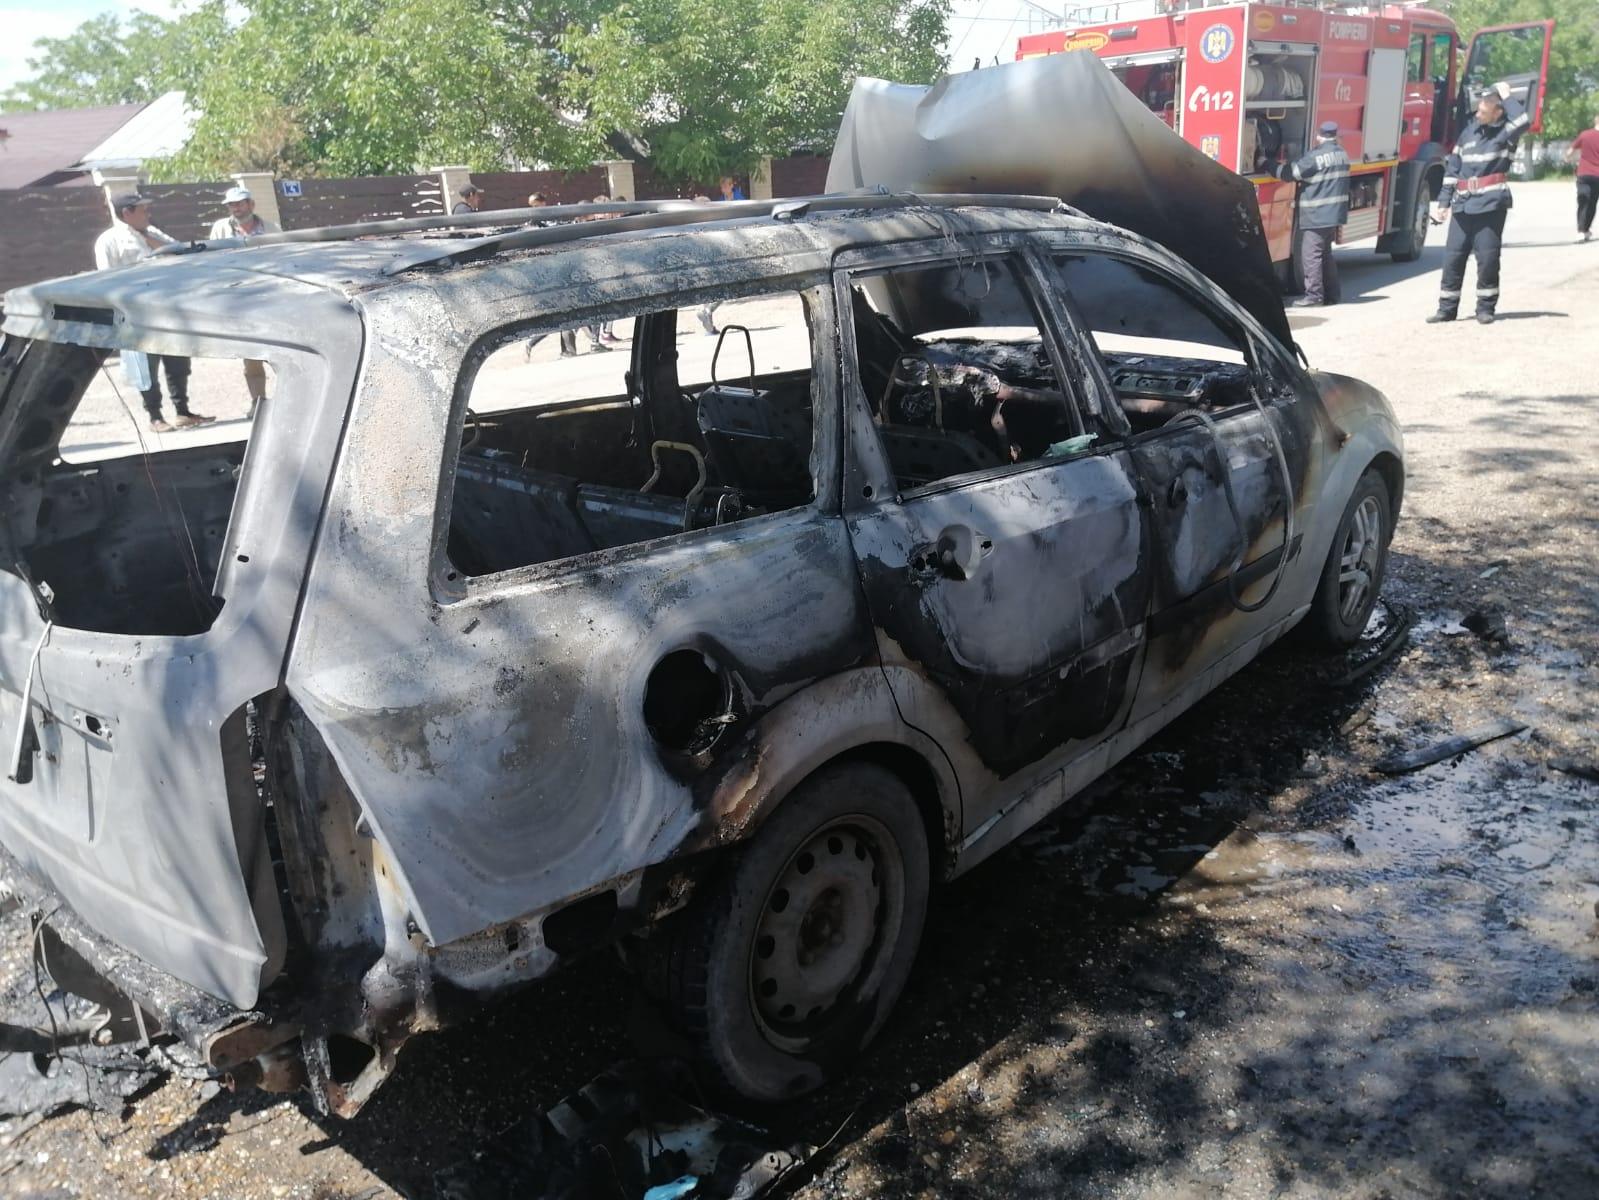 Ford Focus făcut scrum, după ce a luat foc în mers. Doi minori au fost scoşi din maşină la timp - FOTO